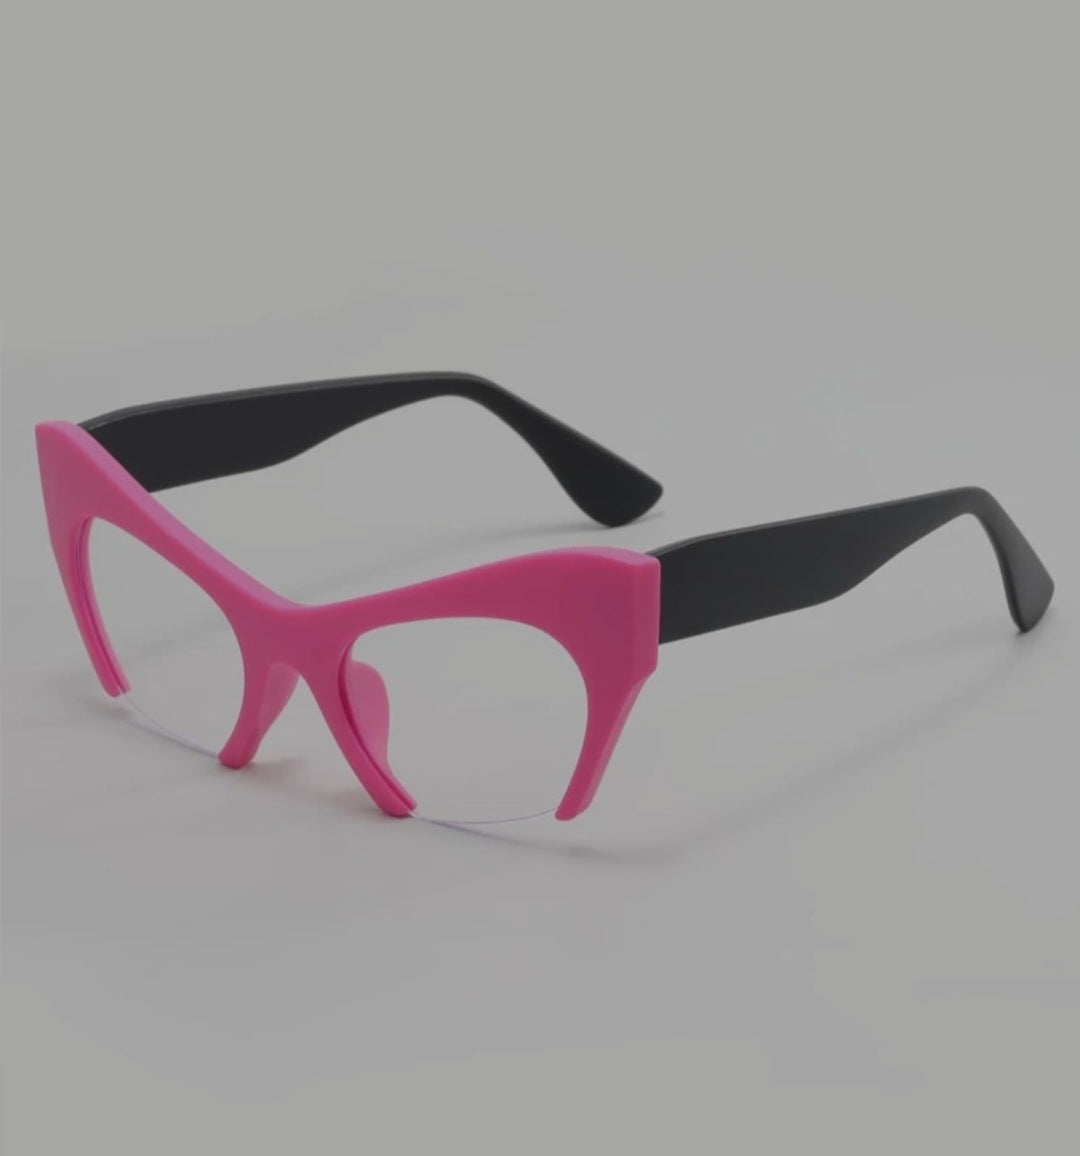 Pink Cateye Fashion Sunglasses